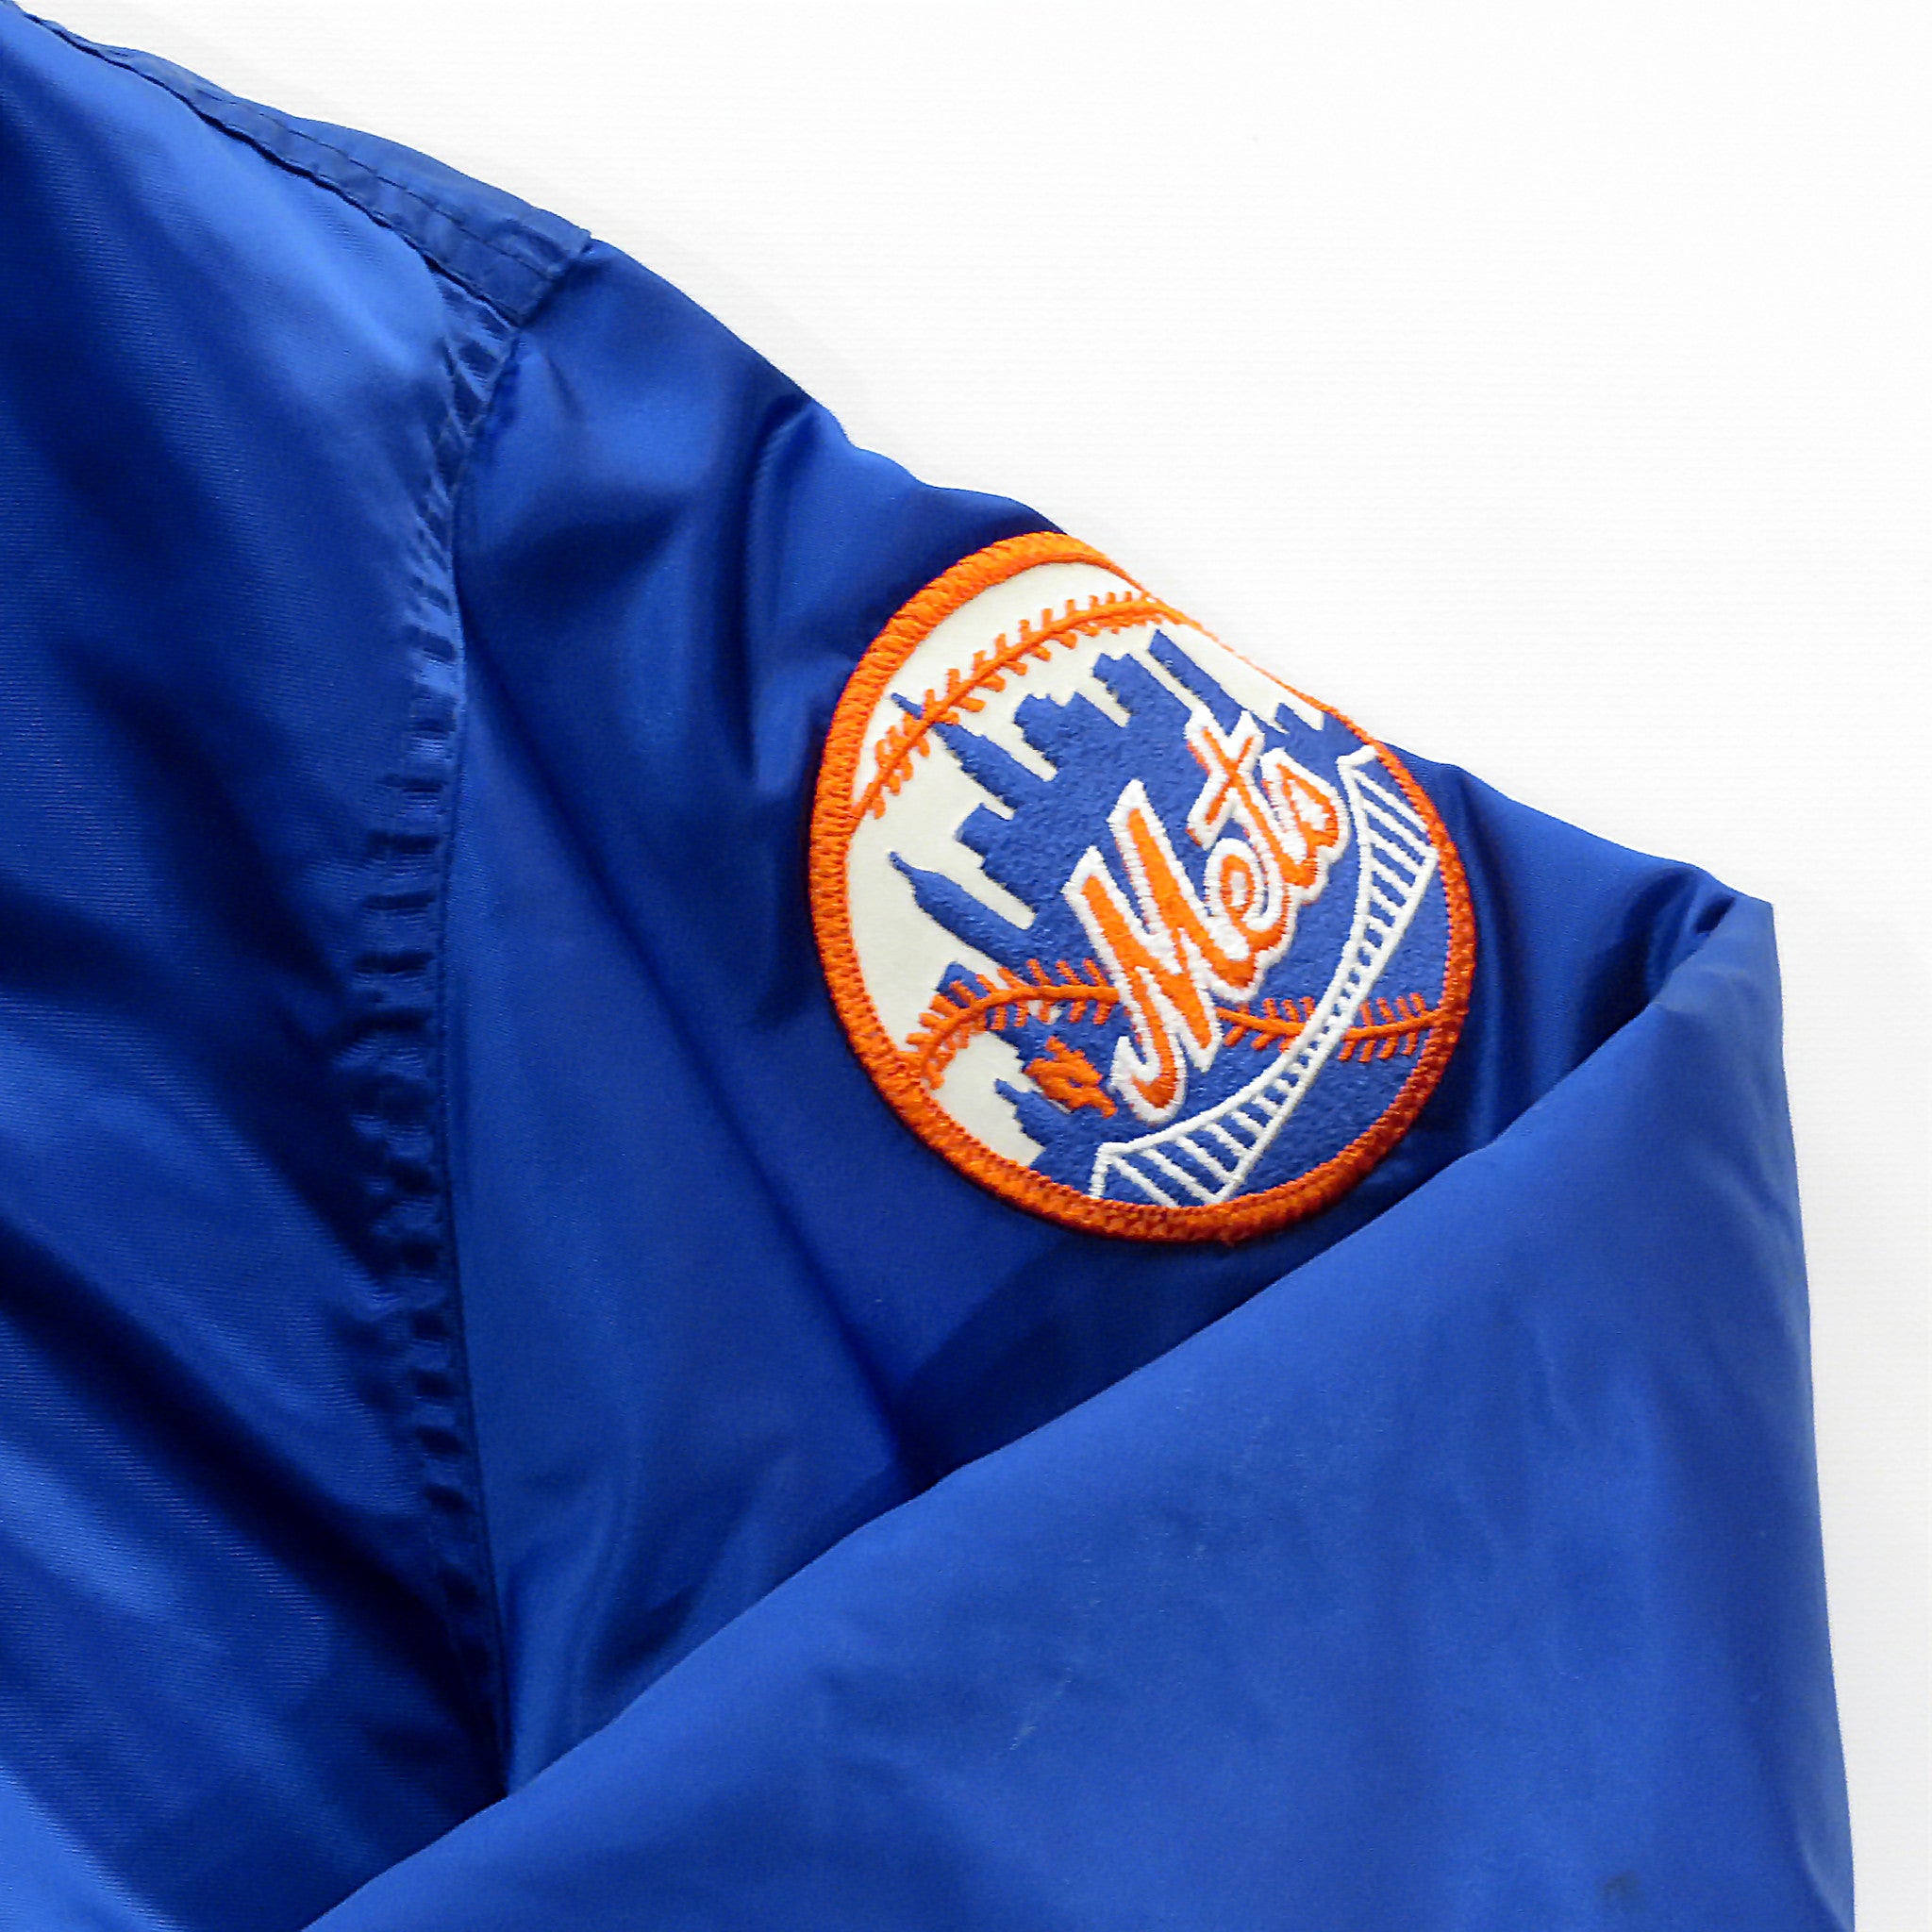 Vintage Starter New York Mets Jacket Sz XL